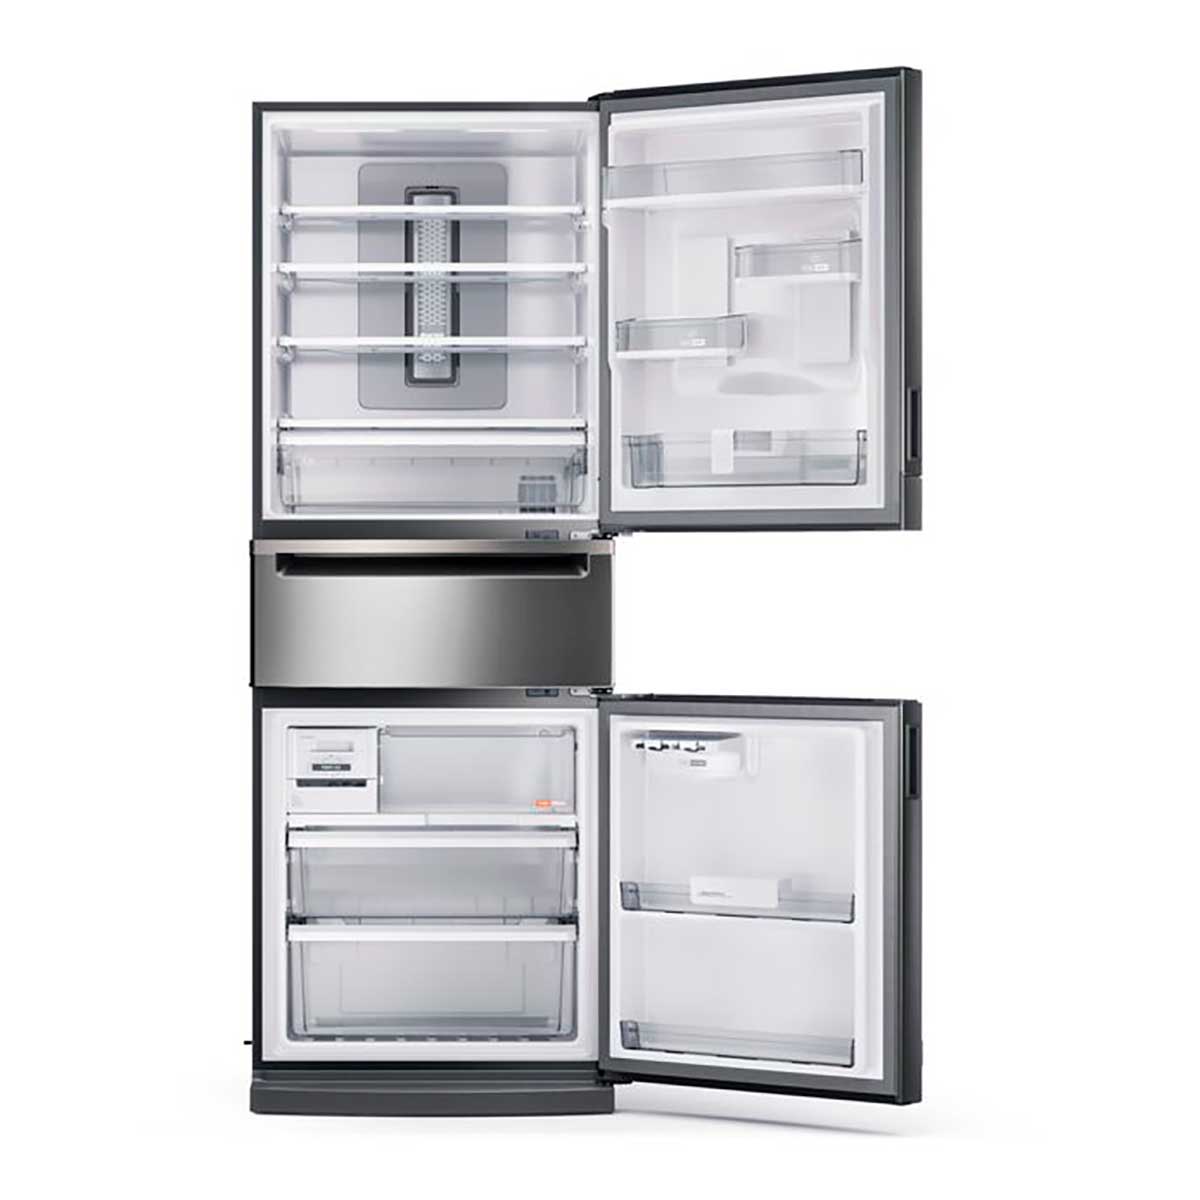 refrigerador-brastemp-frost-free-3-portas-inverse-bry59bk-419-l-inox-220v-5.jpg